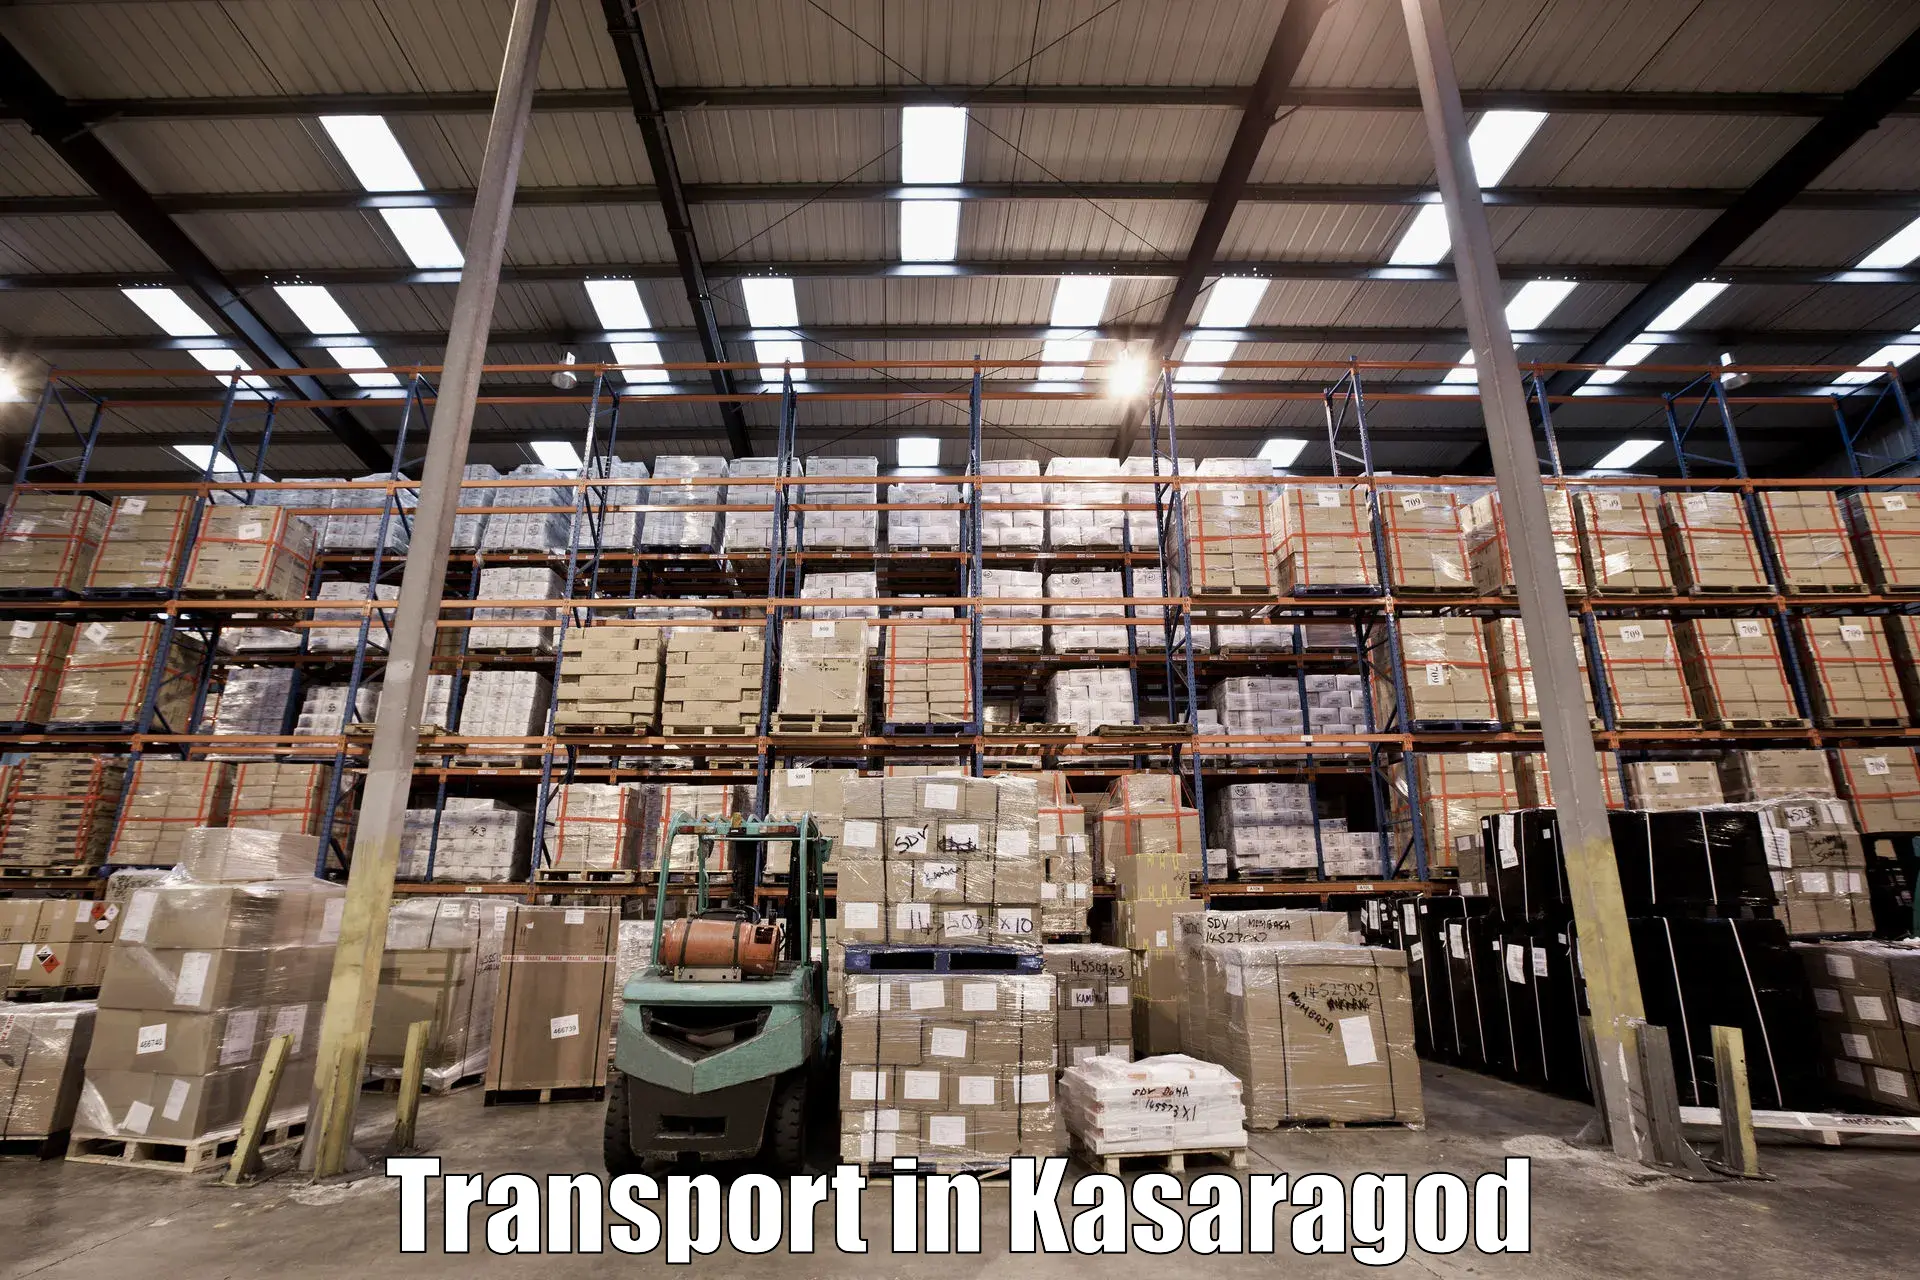 Express transport services in Kasaragod